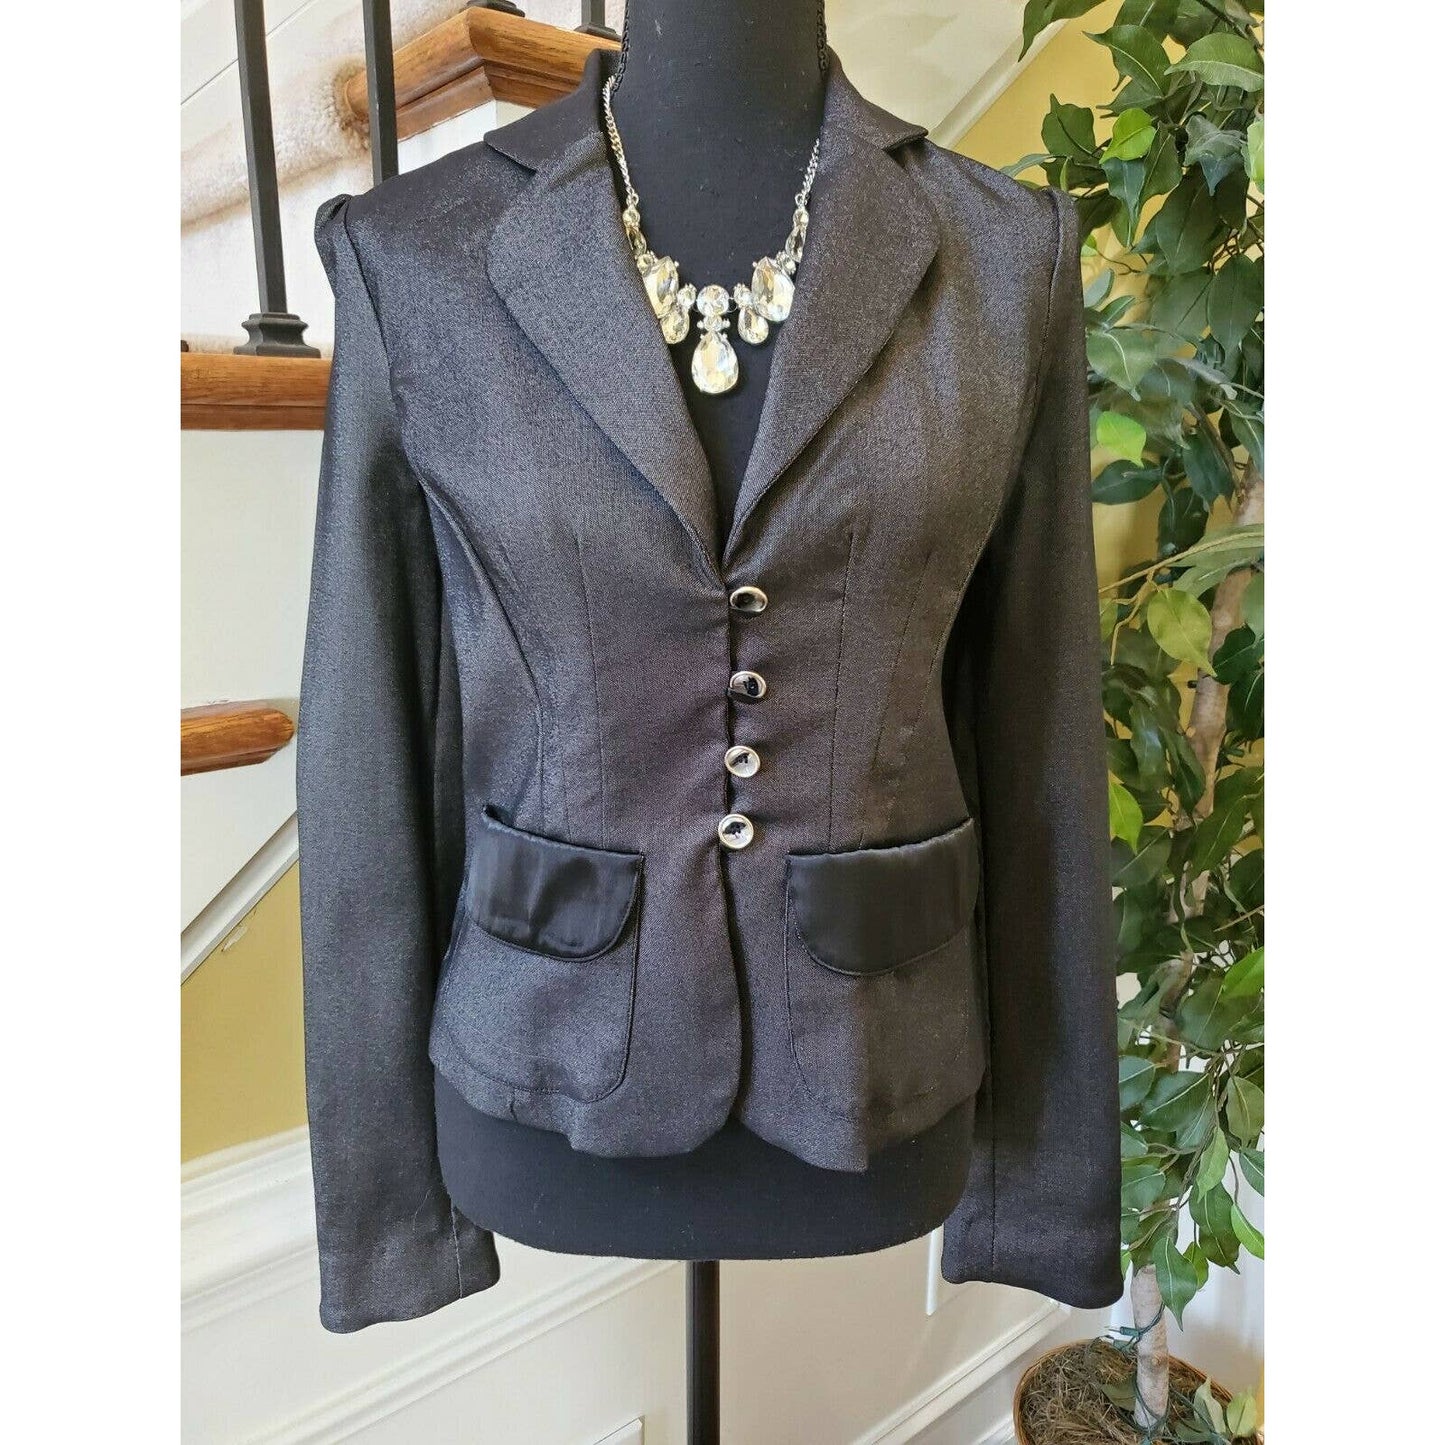 Zinc Womens Gray and Black Blazer Jacket Wear to Work Career Sz S